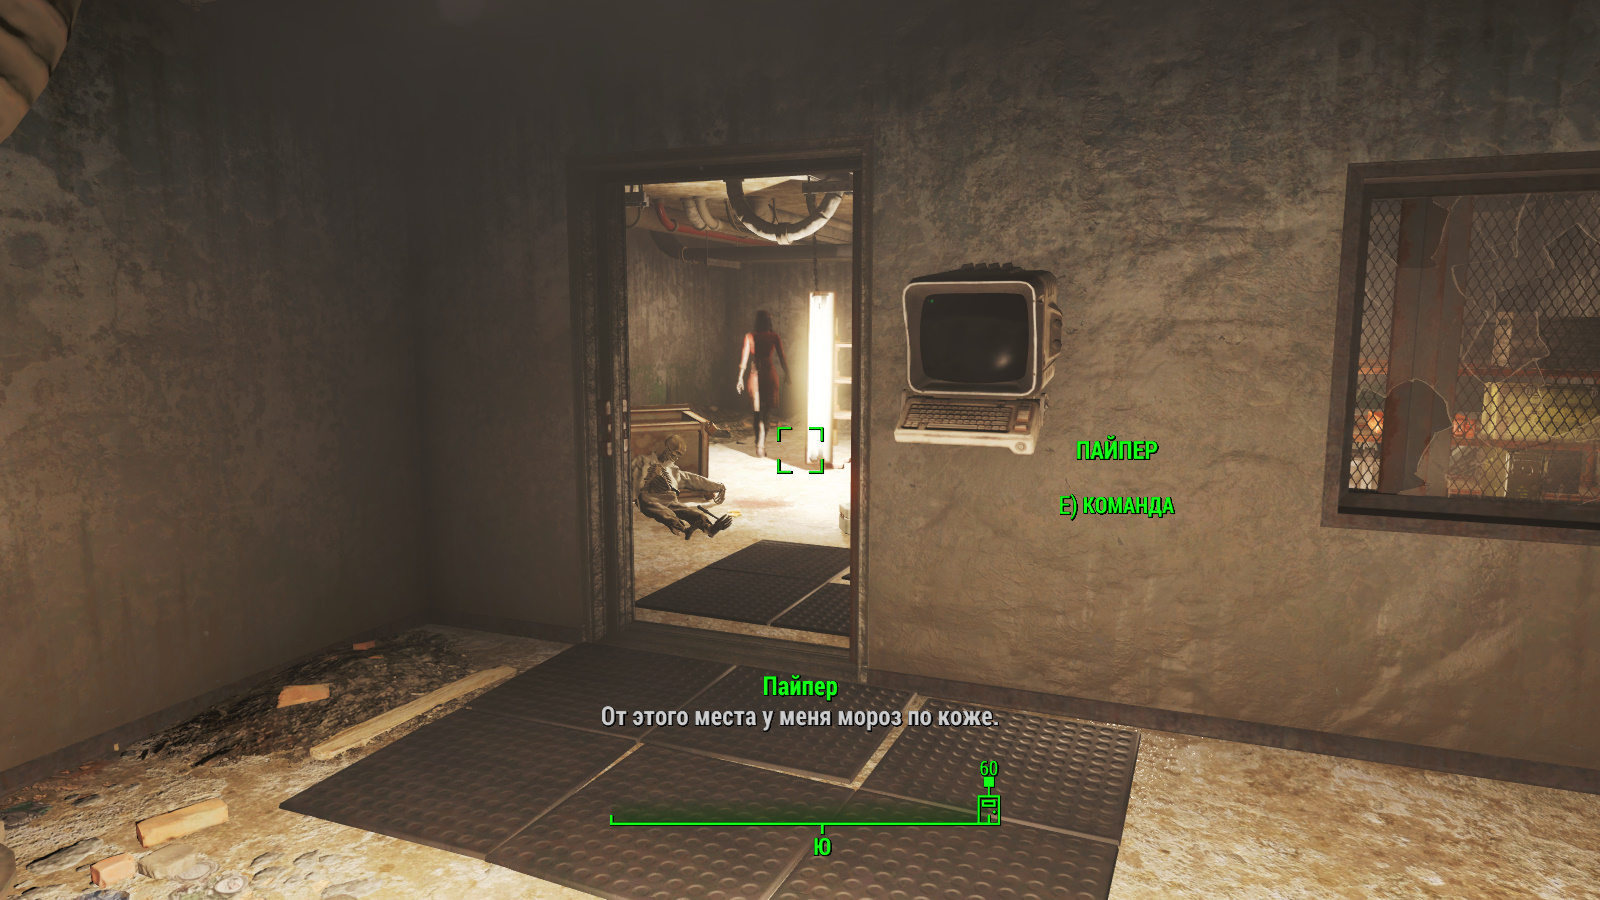 Fallout 4 руководство по тайным операциям сша на карте фото 52